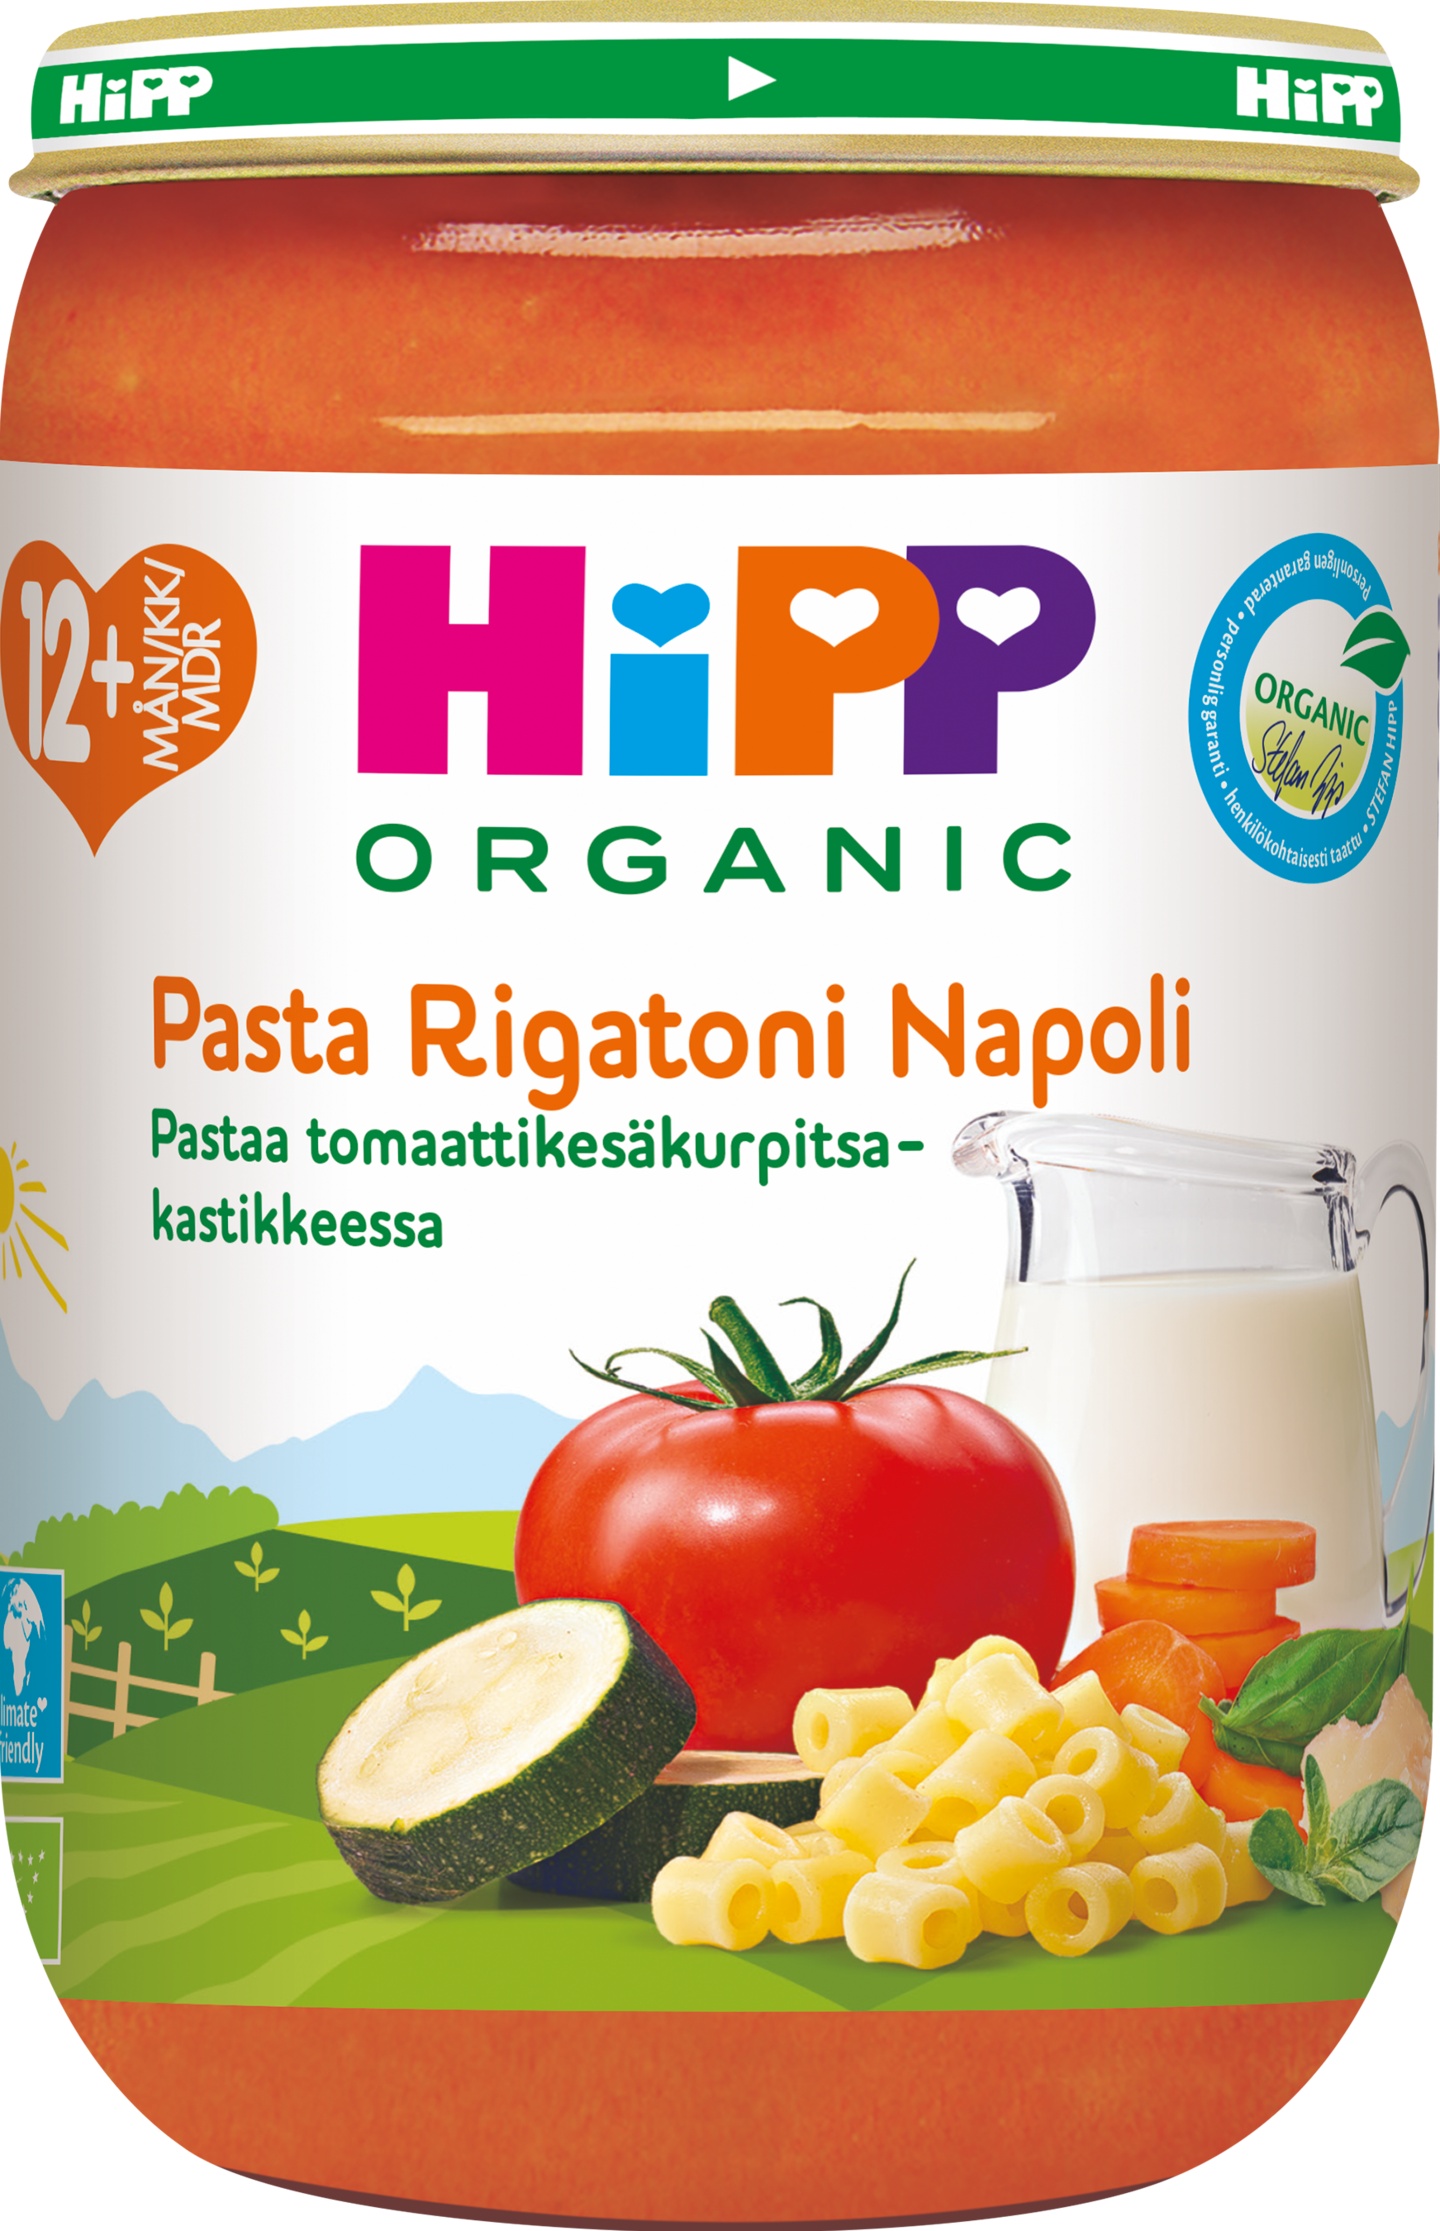 HIPP pasta tomatti-kesäkurpitsa -kastikkeessa 220g 12kk luomu —  HoReCa-tukku Kespro